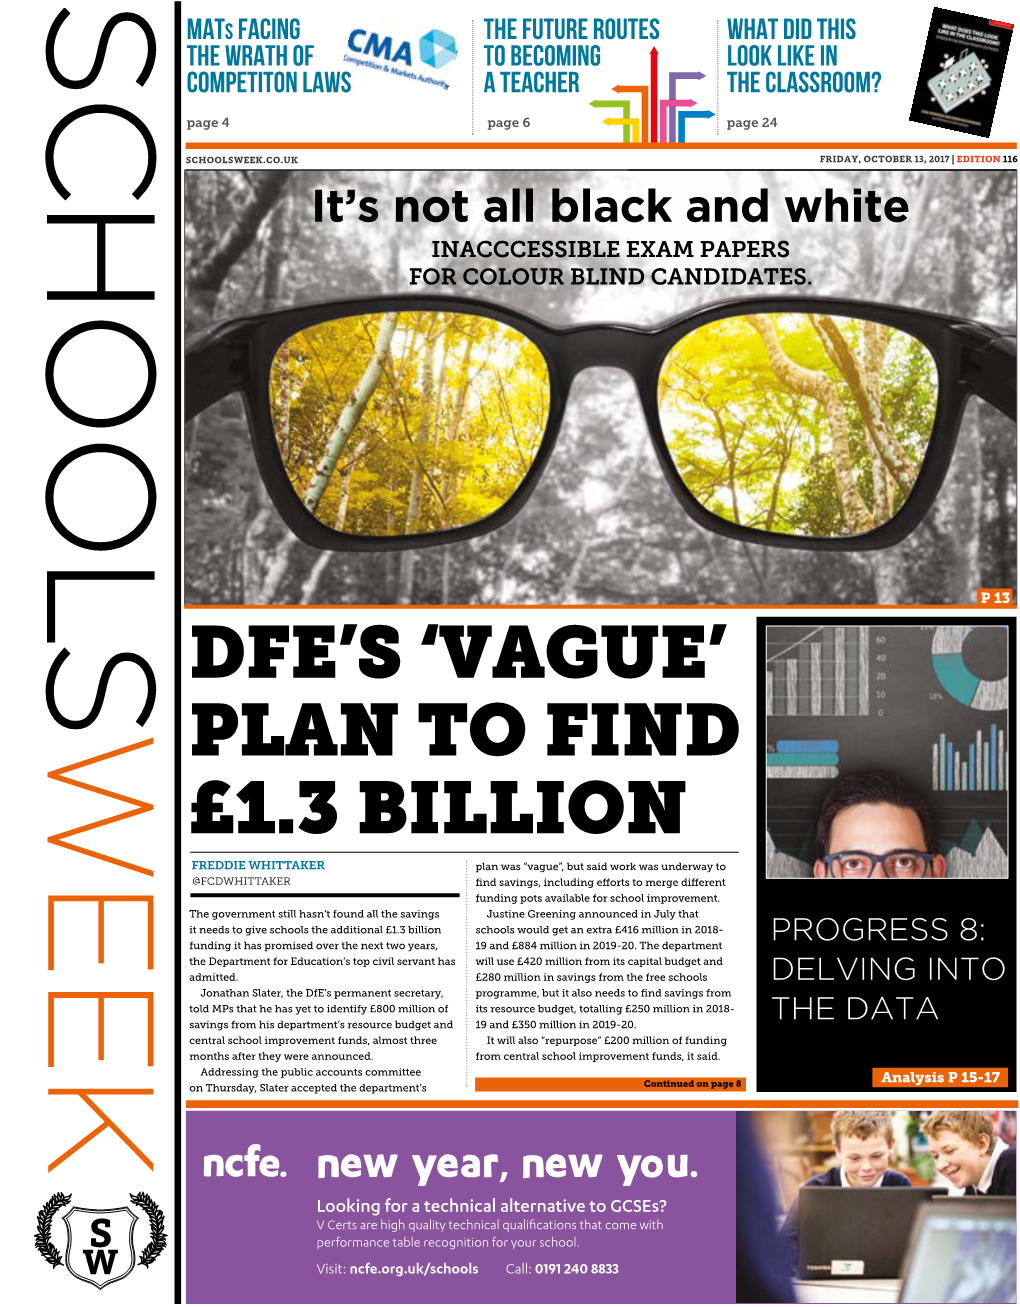 Dfe's 'Vague' Plan to Find £1.3 Billion